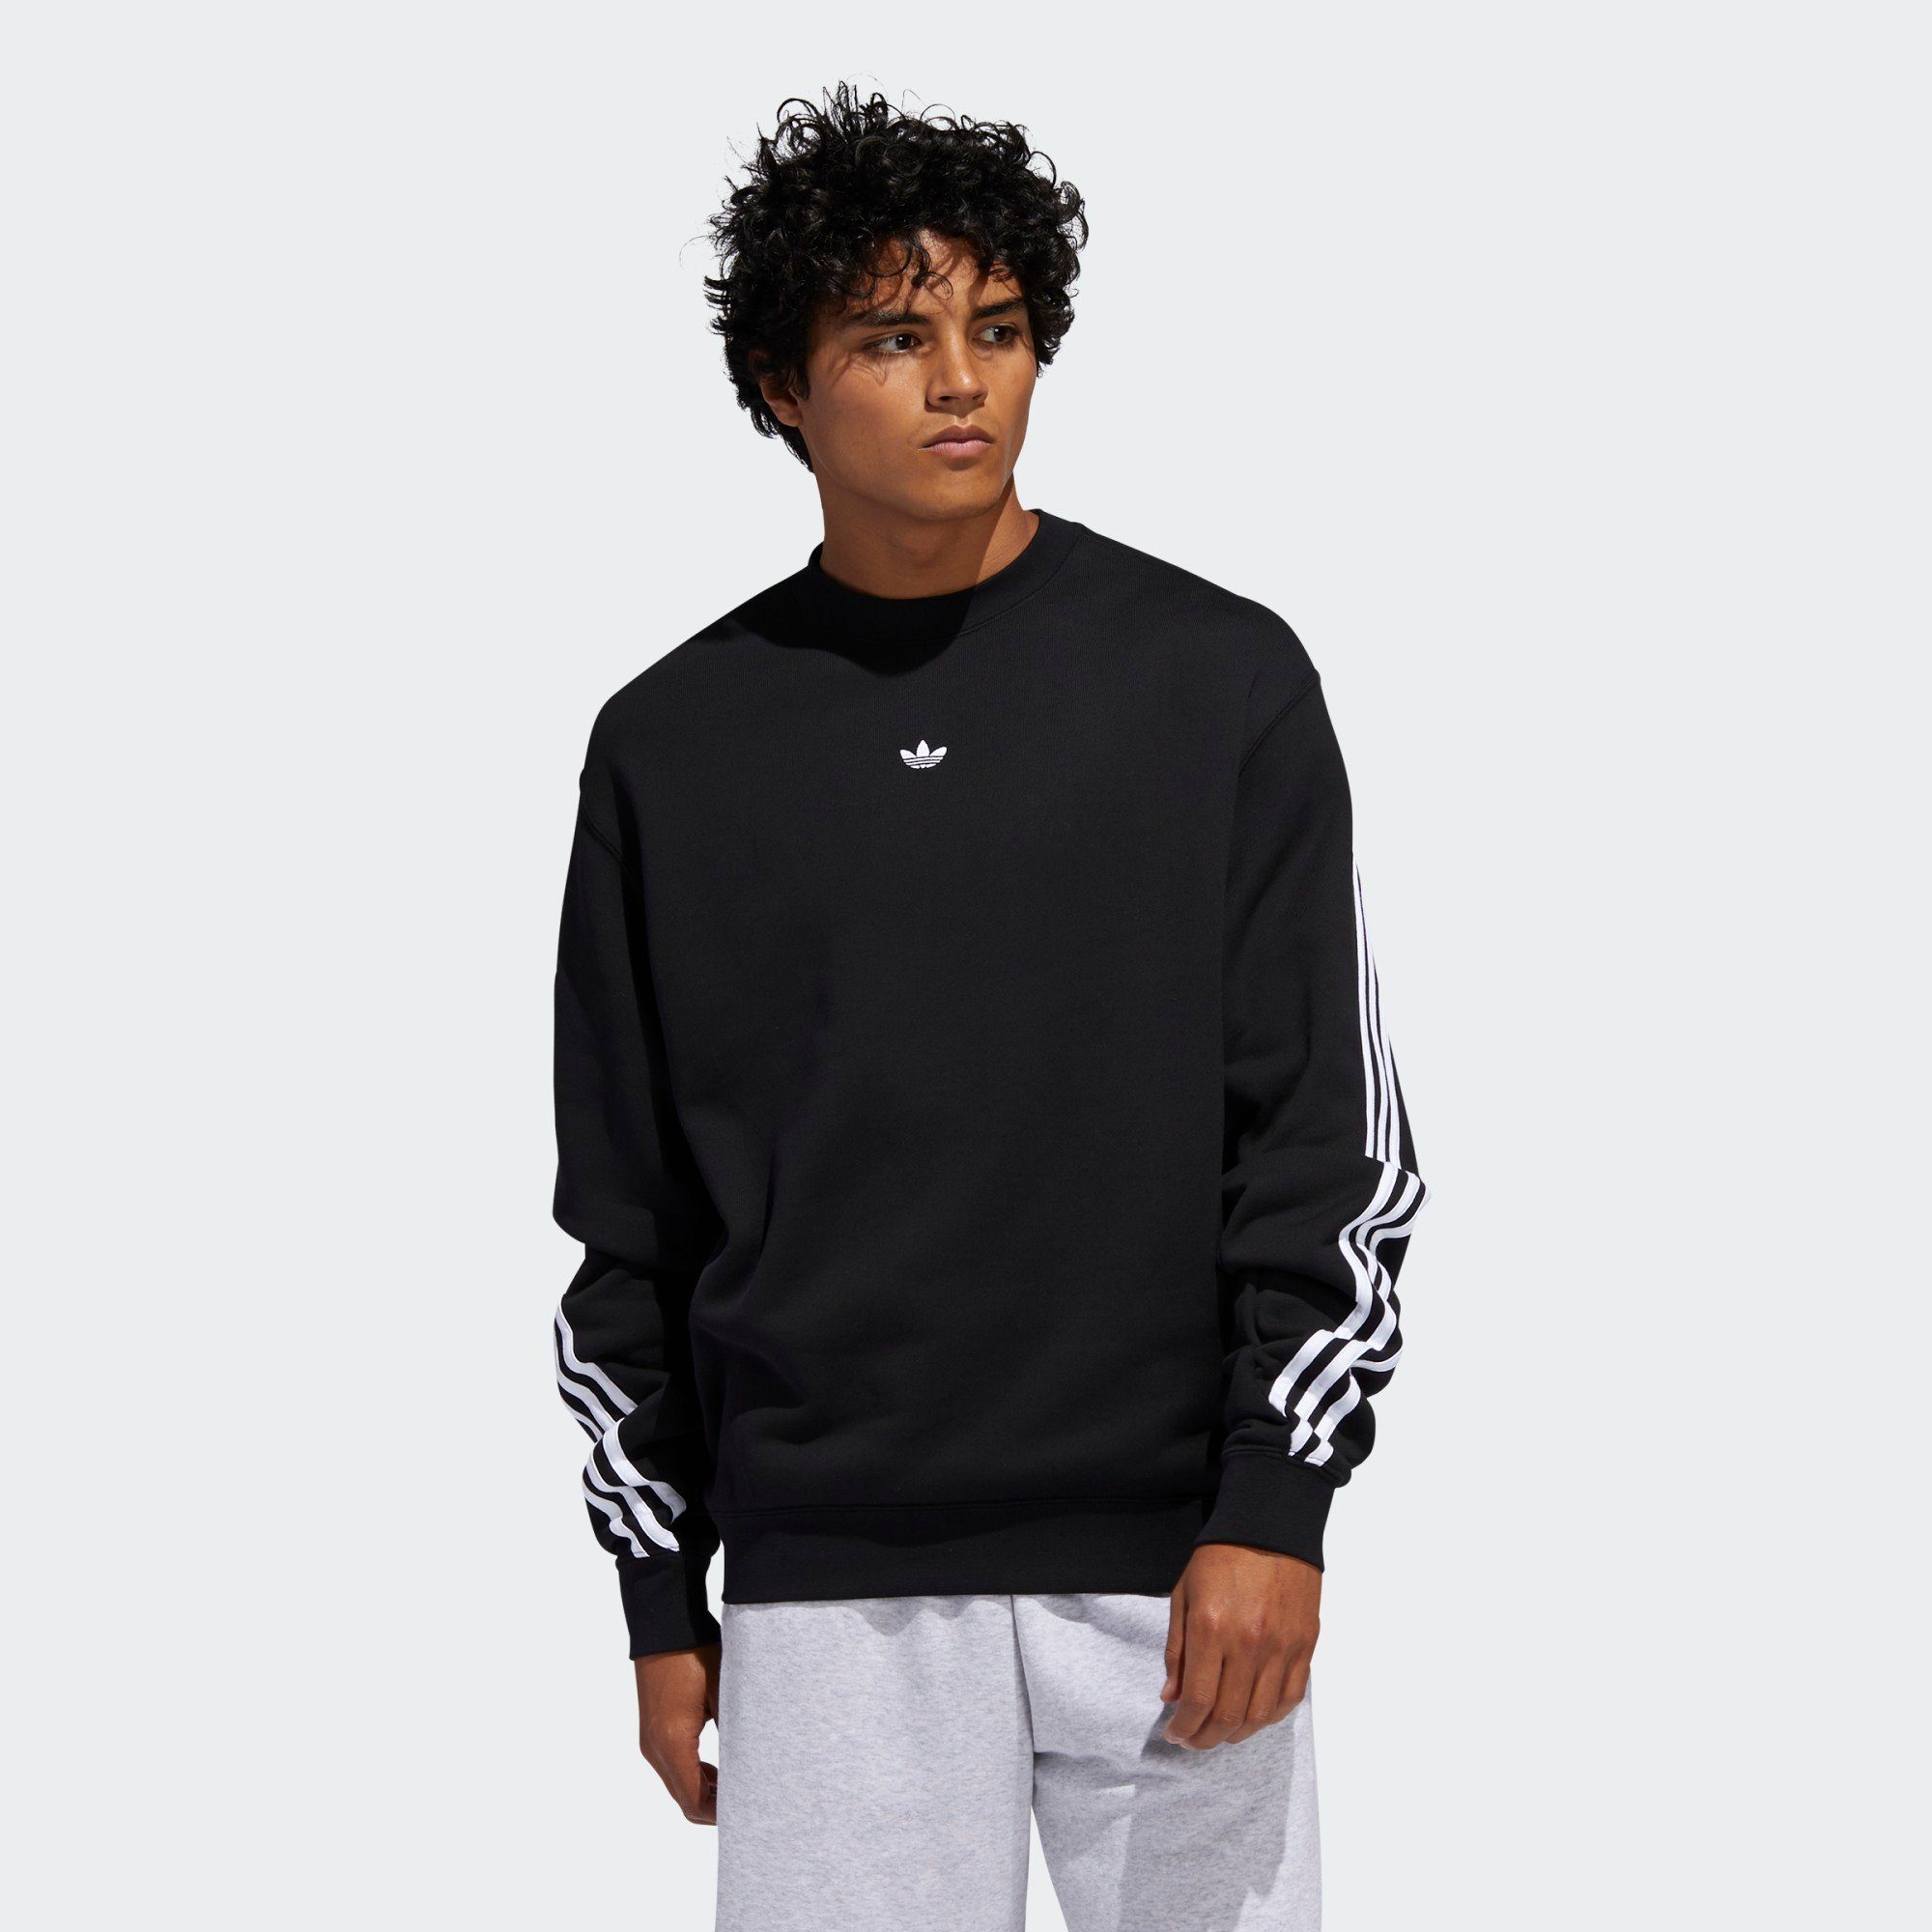 Adidas Originals Sweatshirt 3 Streifen Wrap Sweatshirt Online Kaufen Otto